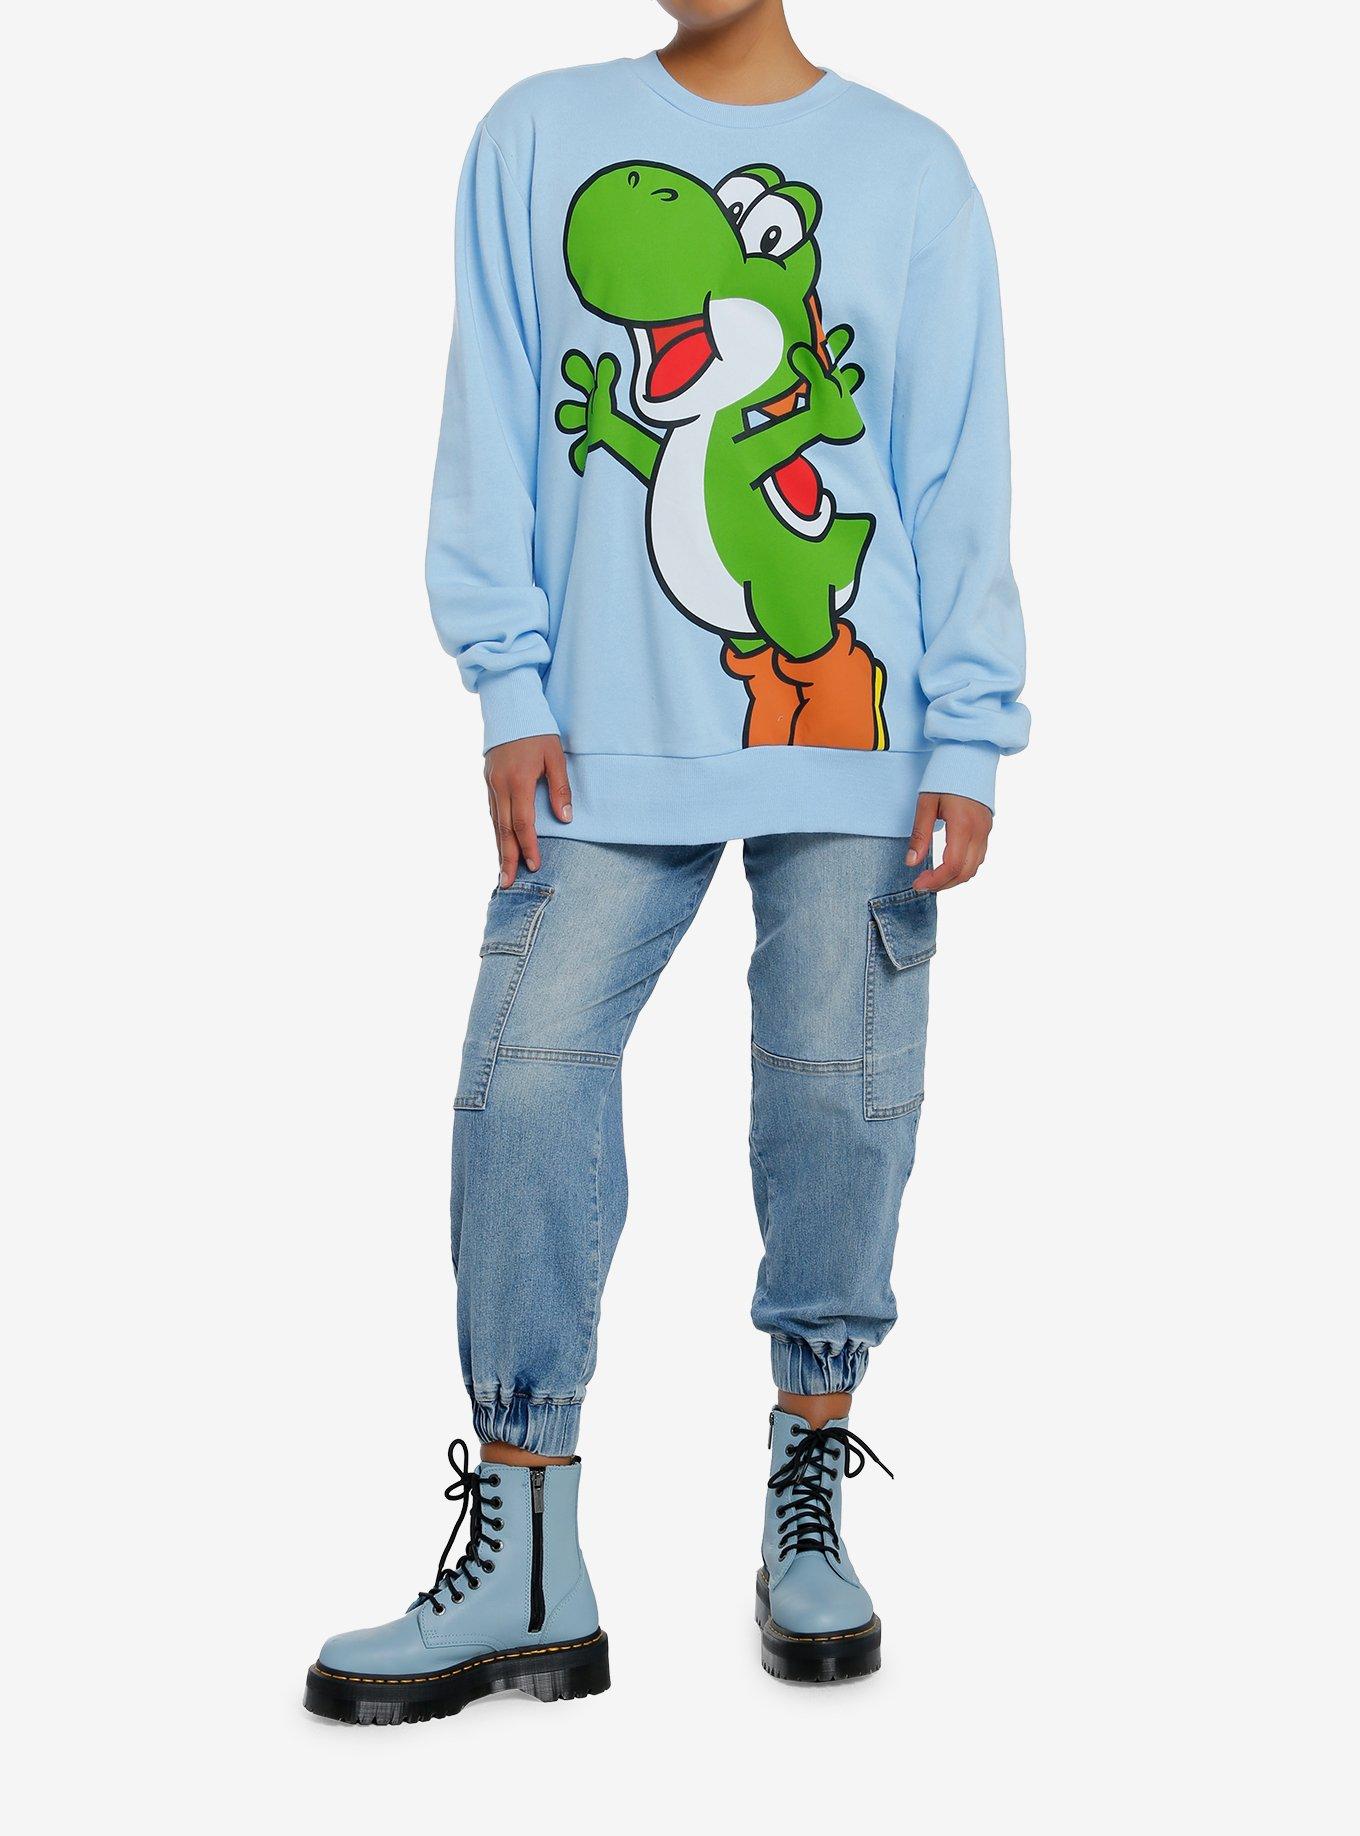 Super Mario Bros. Yoshi Jumbo Graphic Girls Sweatshirt, MULTI, alternate